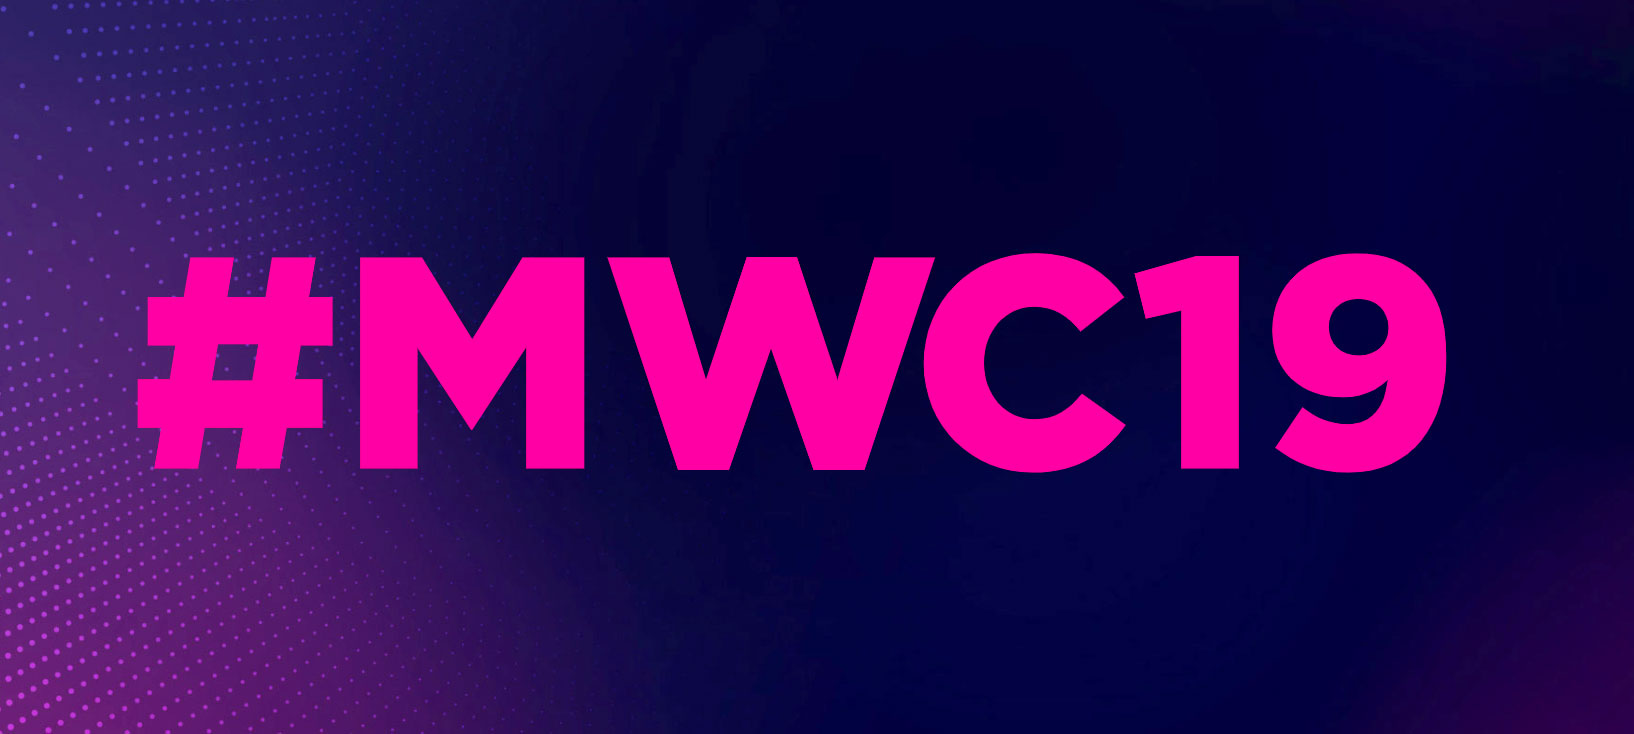 تاریخ نمایشگاه MWC 2019